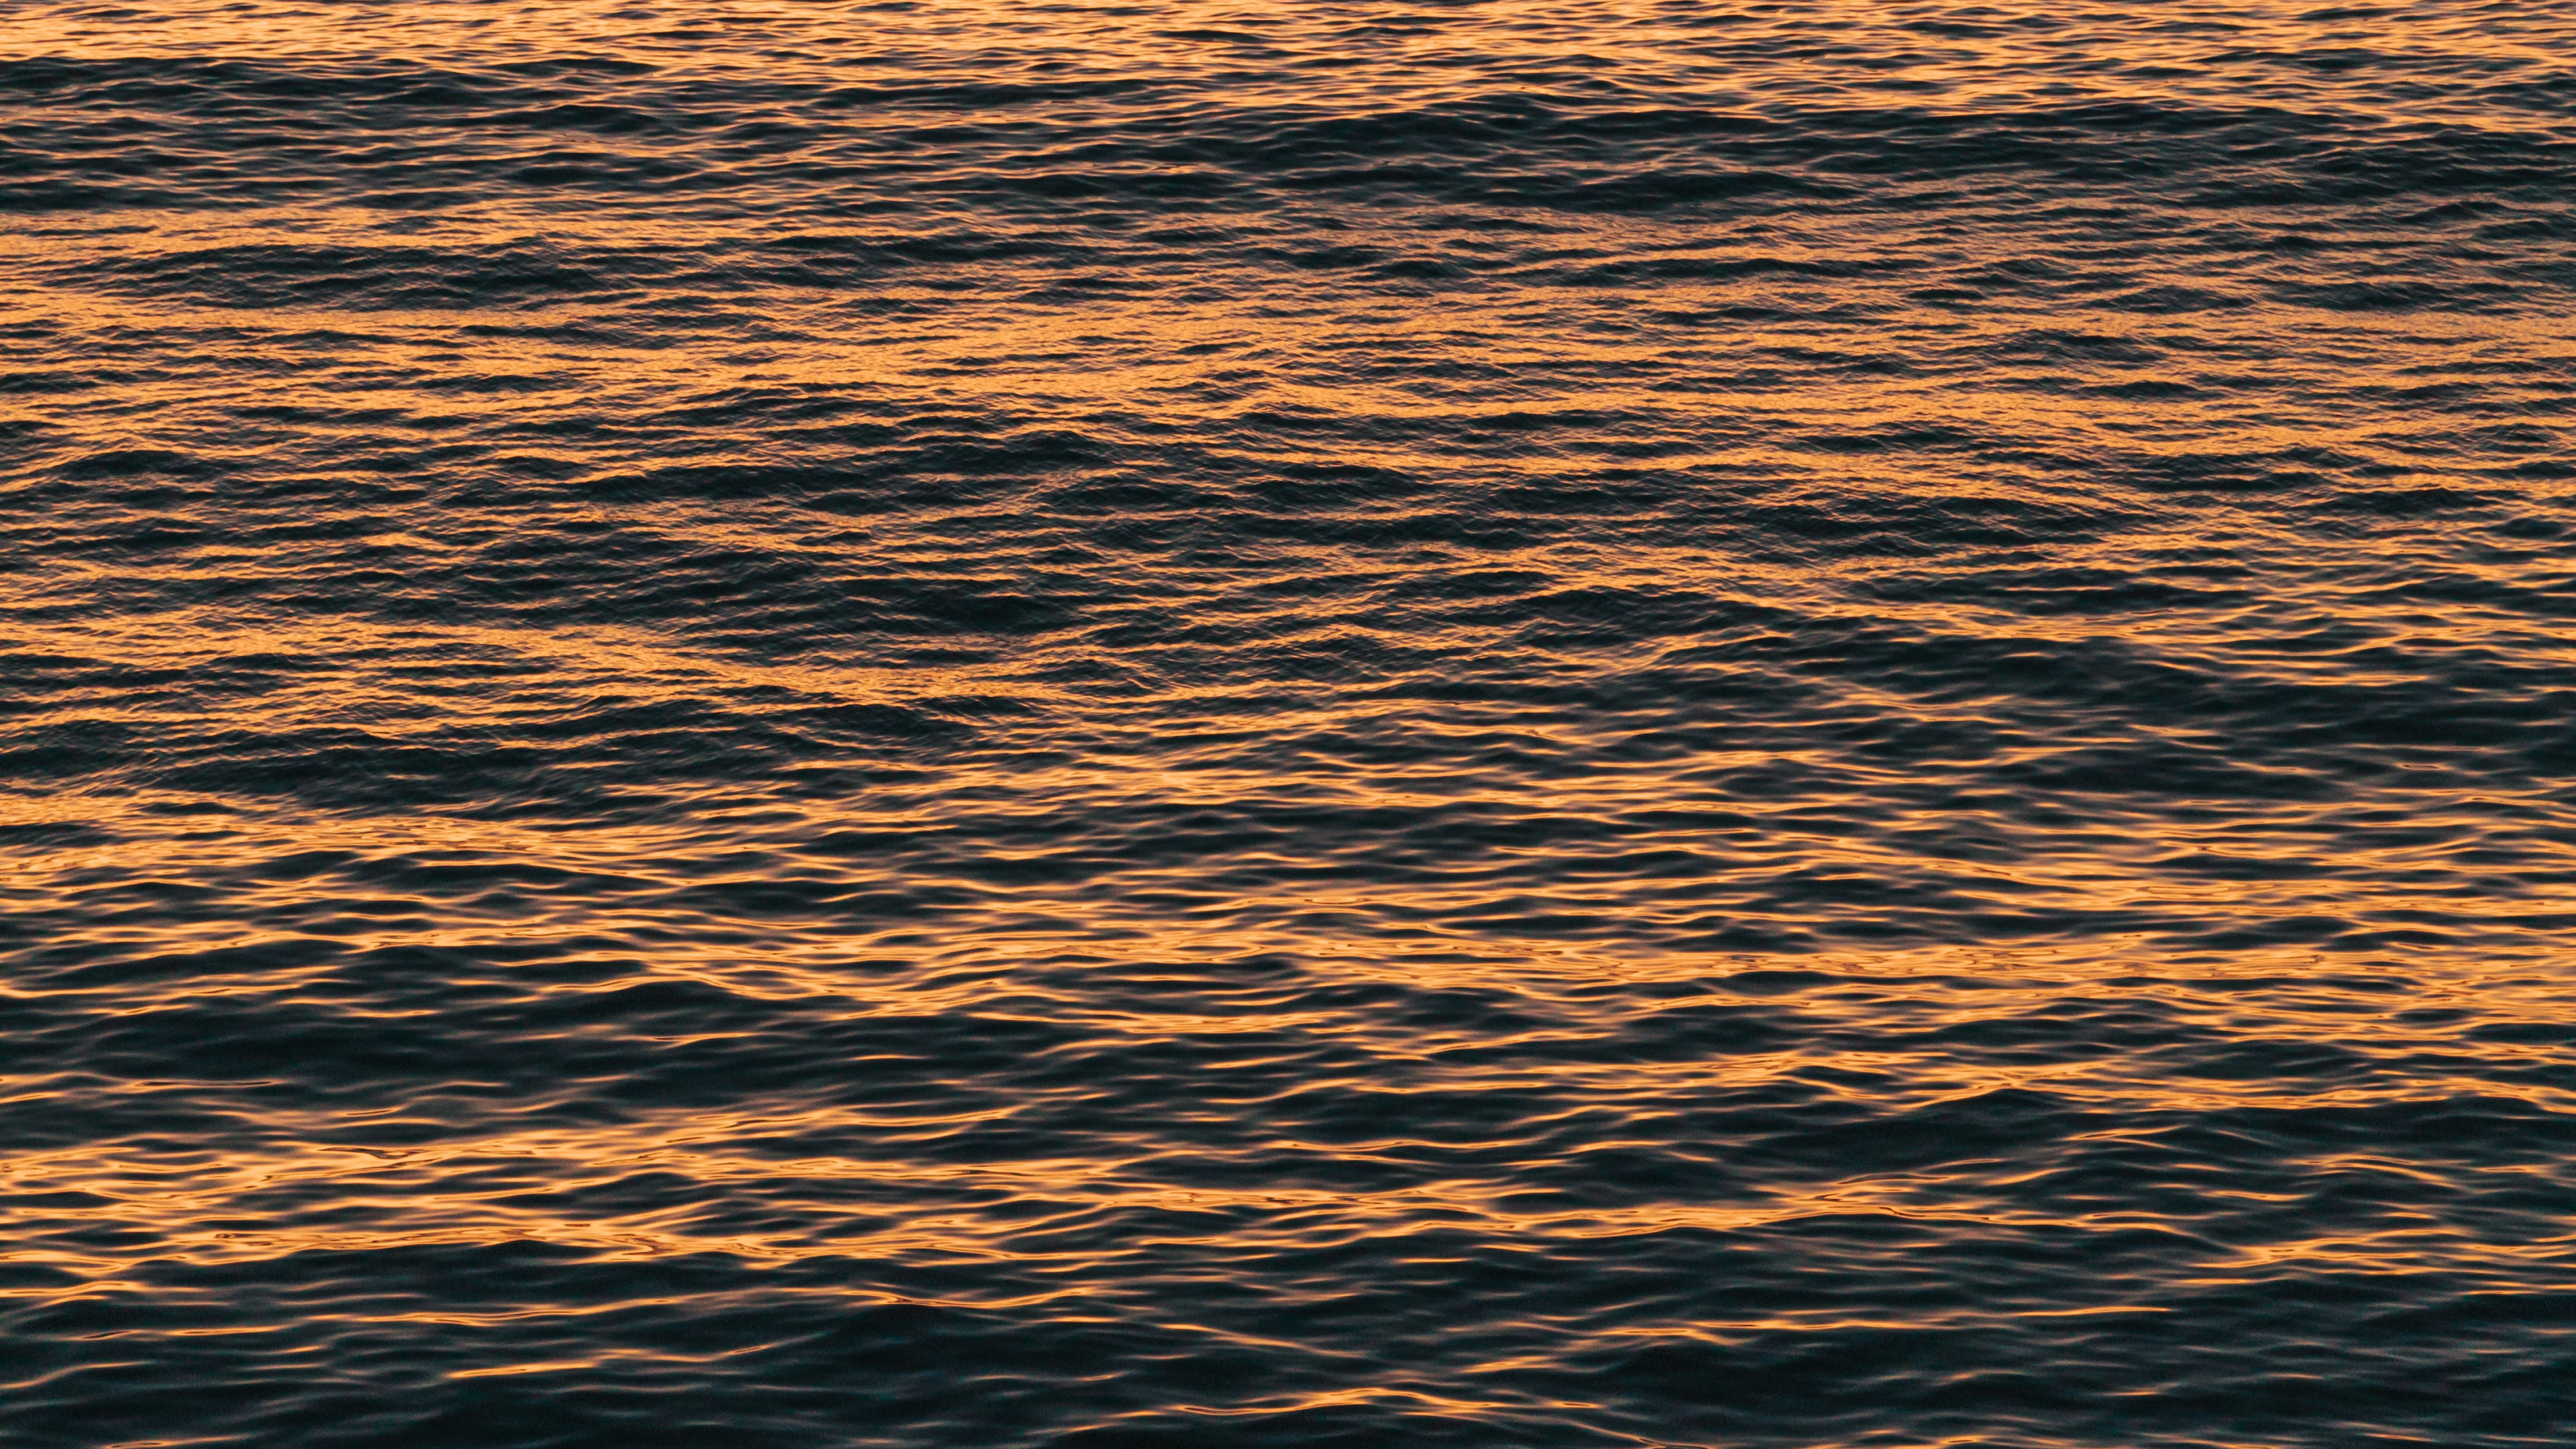 Agua, Mar, Oceano, Calma, Reflexión. Wallpaper in 3840x2160 Resolution